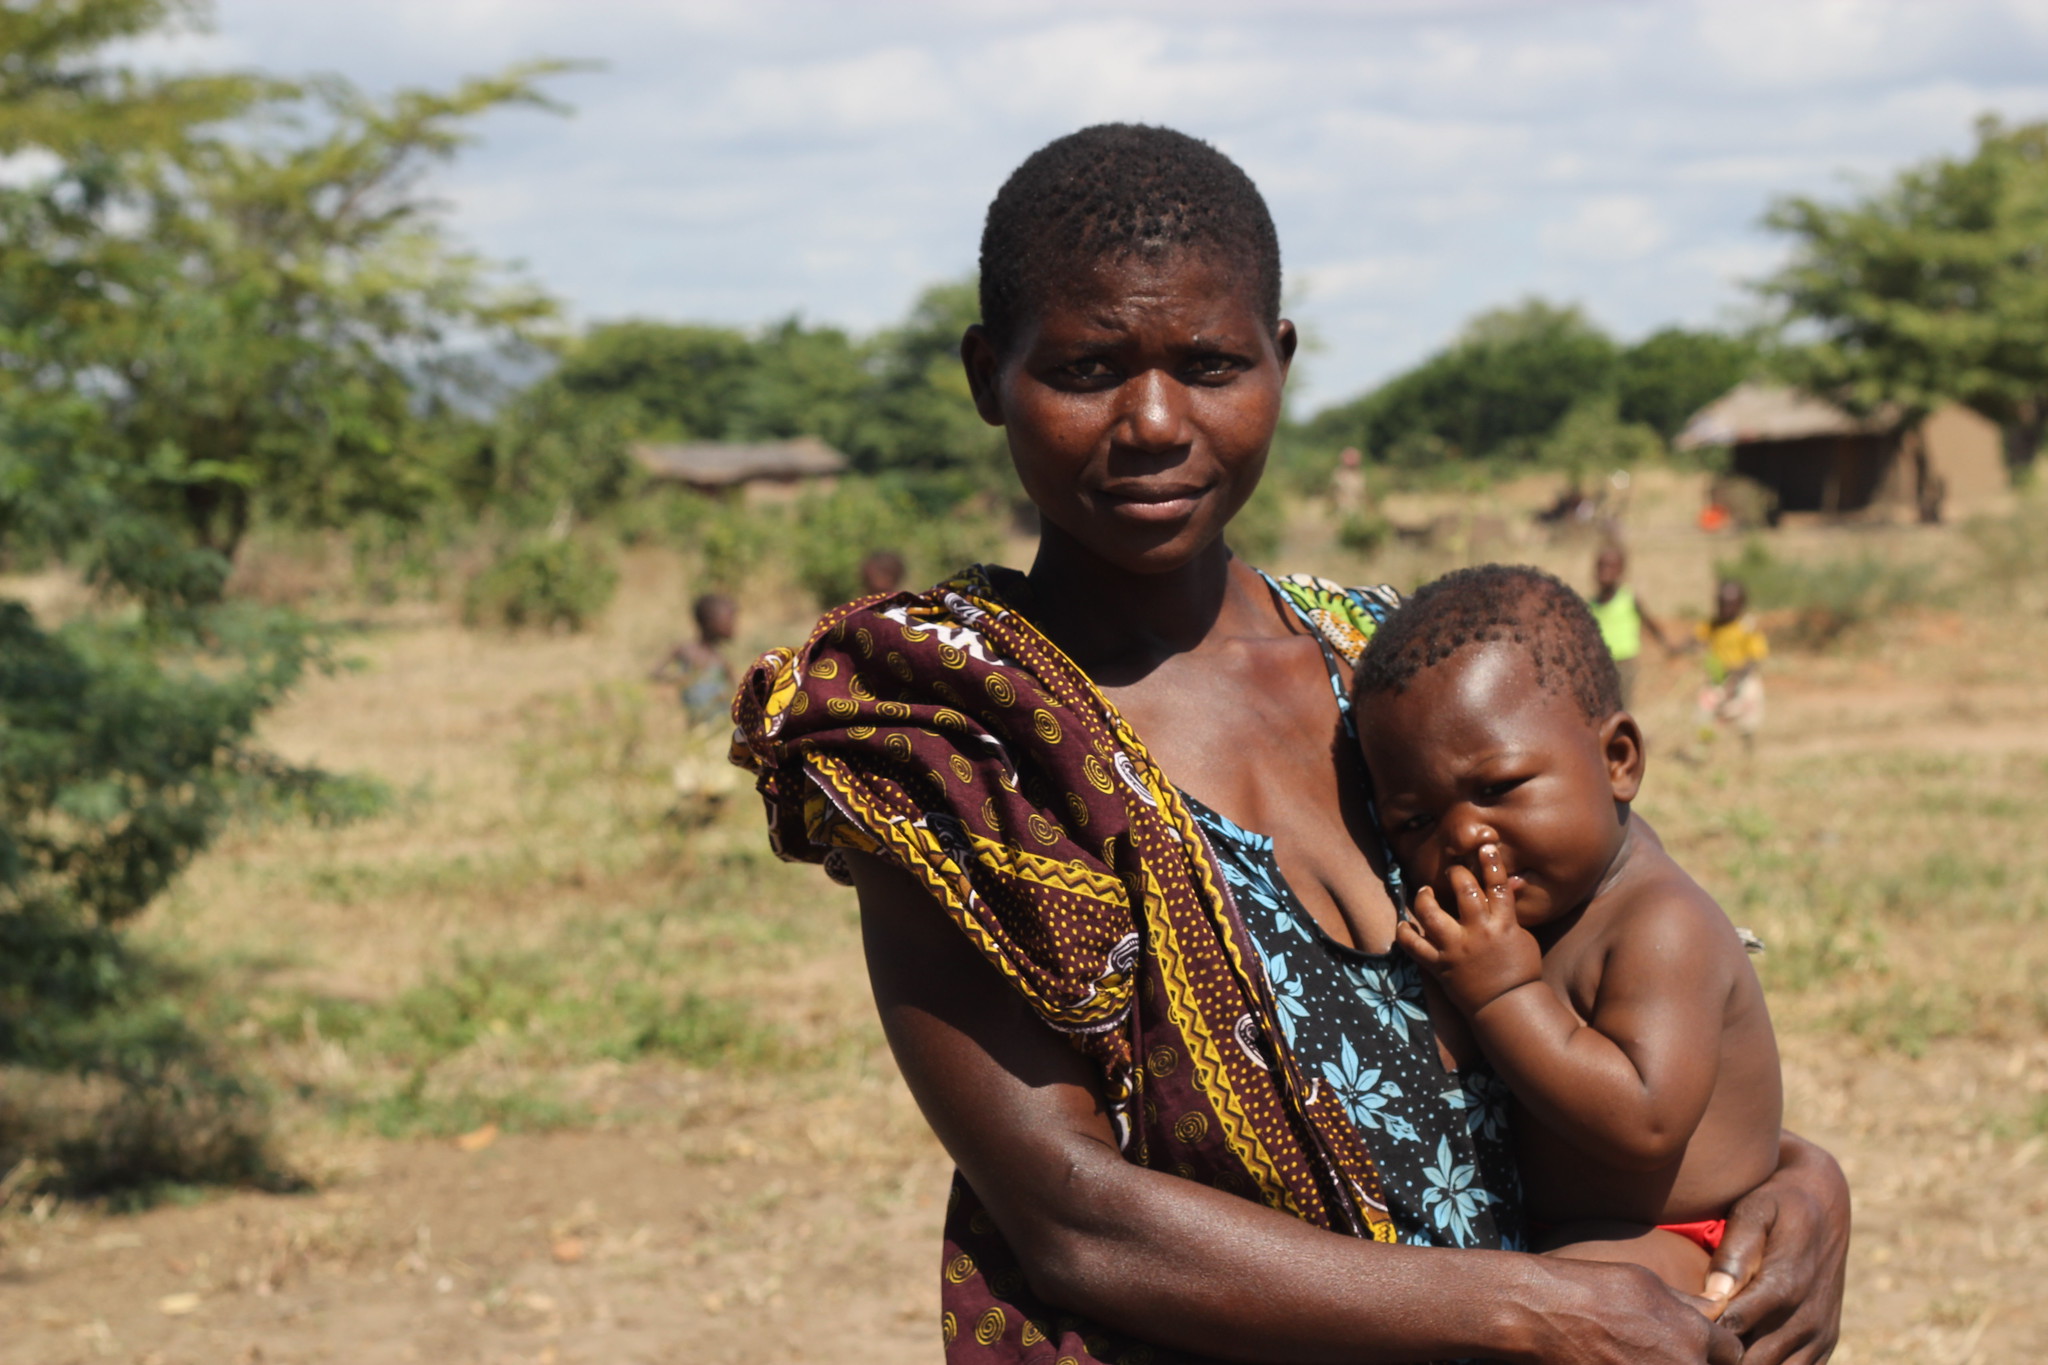  In conflictgebieden lopen vrouwen tot 7 keer meer risico bij abortus